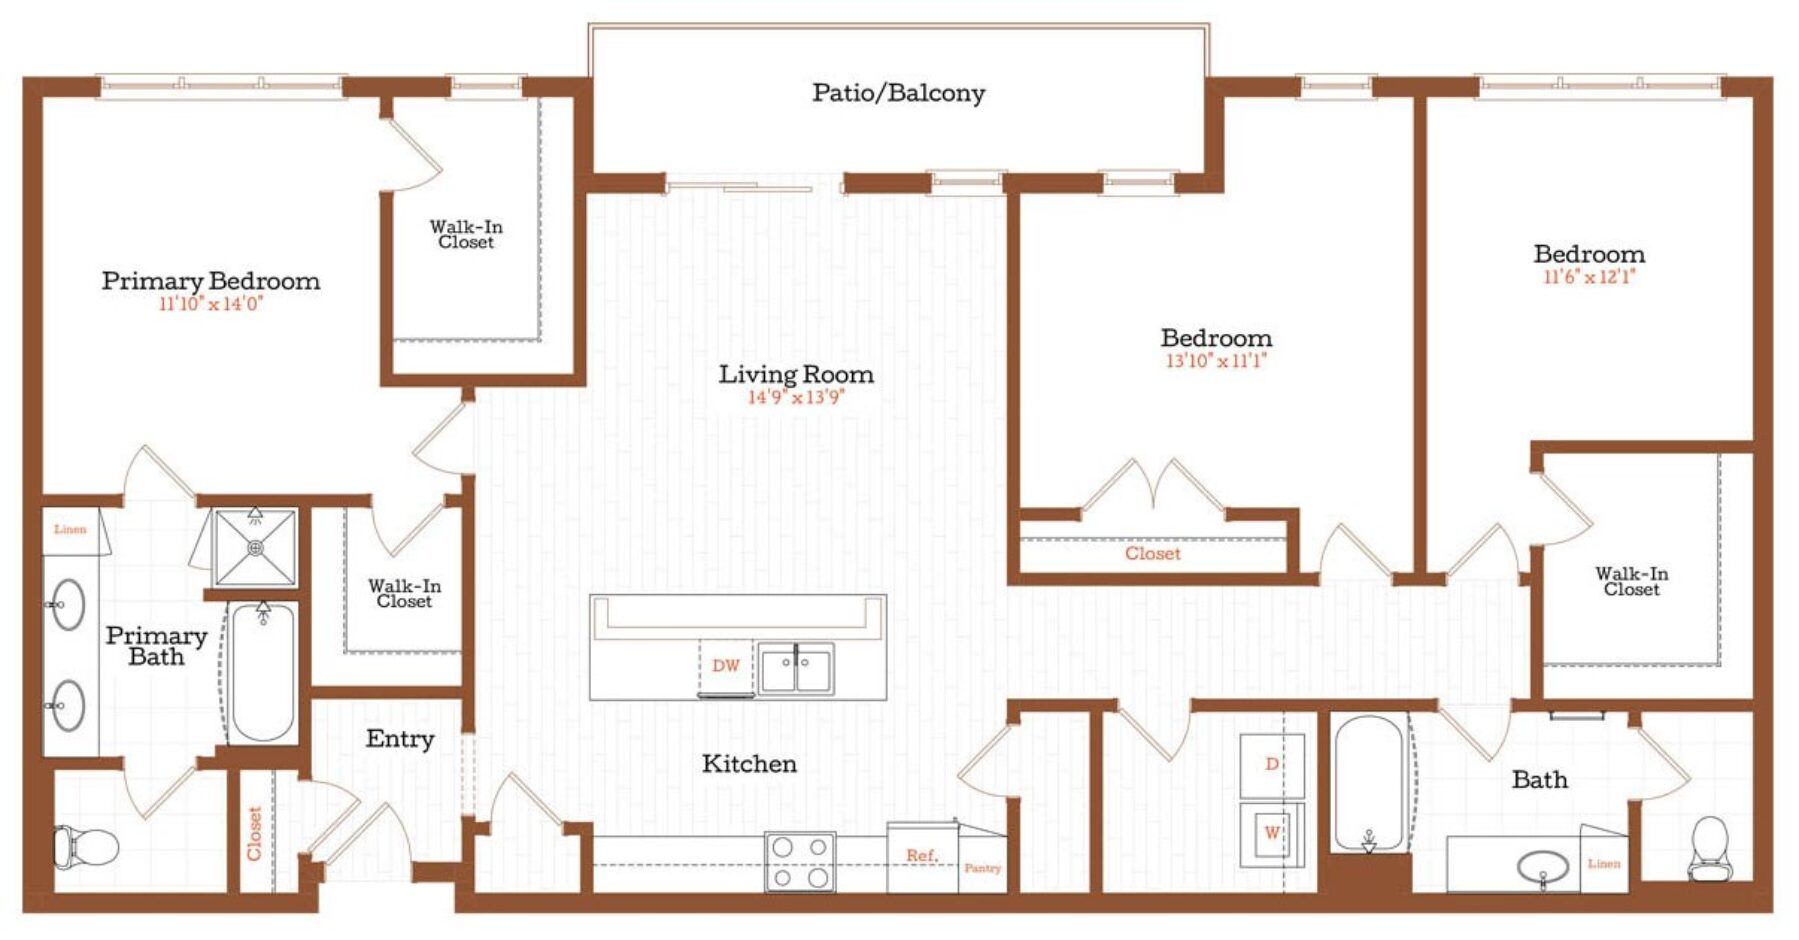 Plan Image: C1 - 3 Bedroom